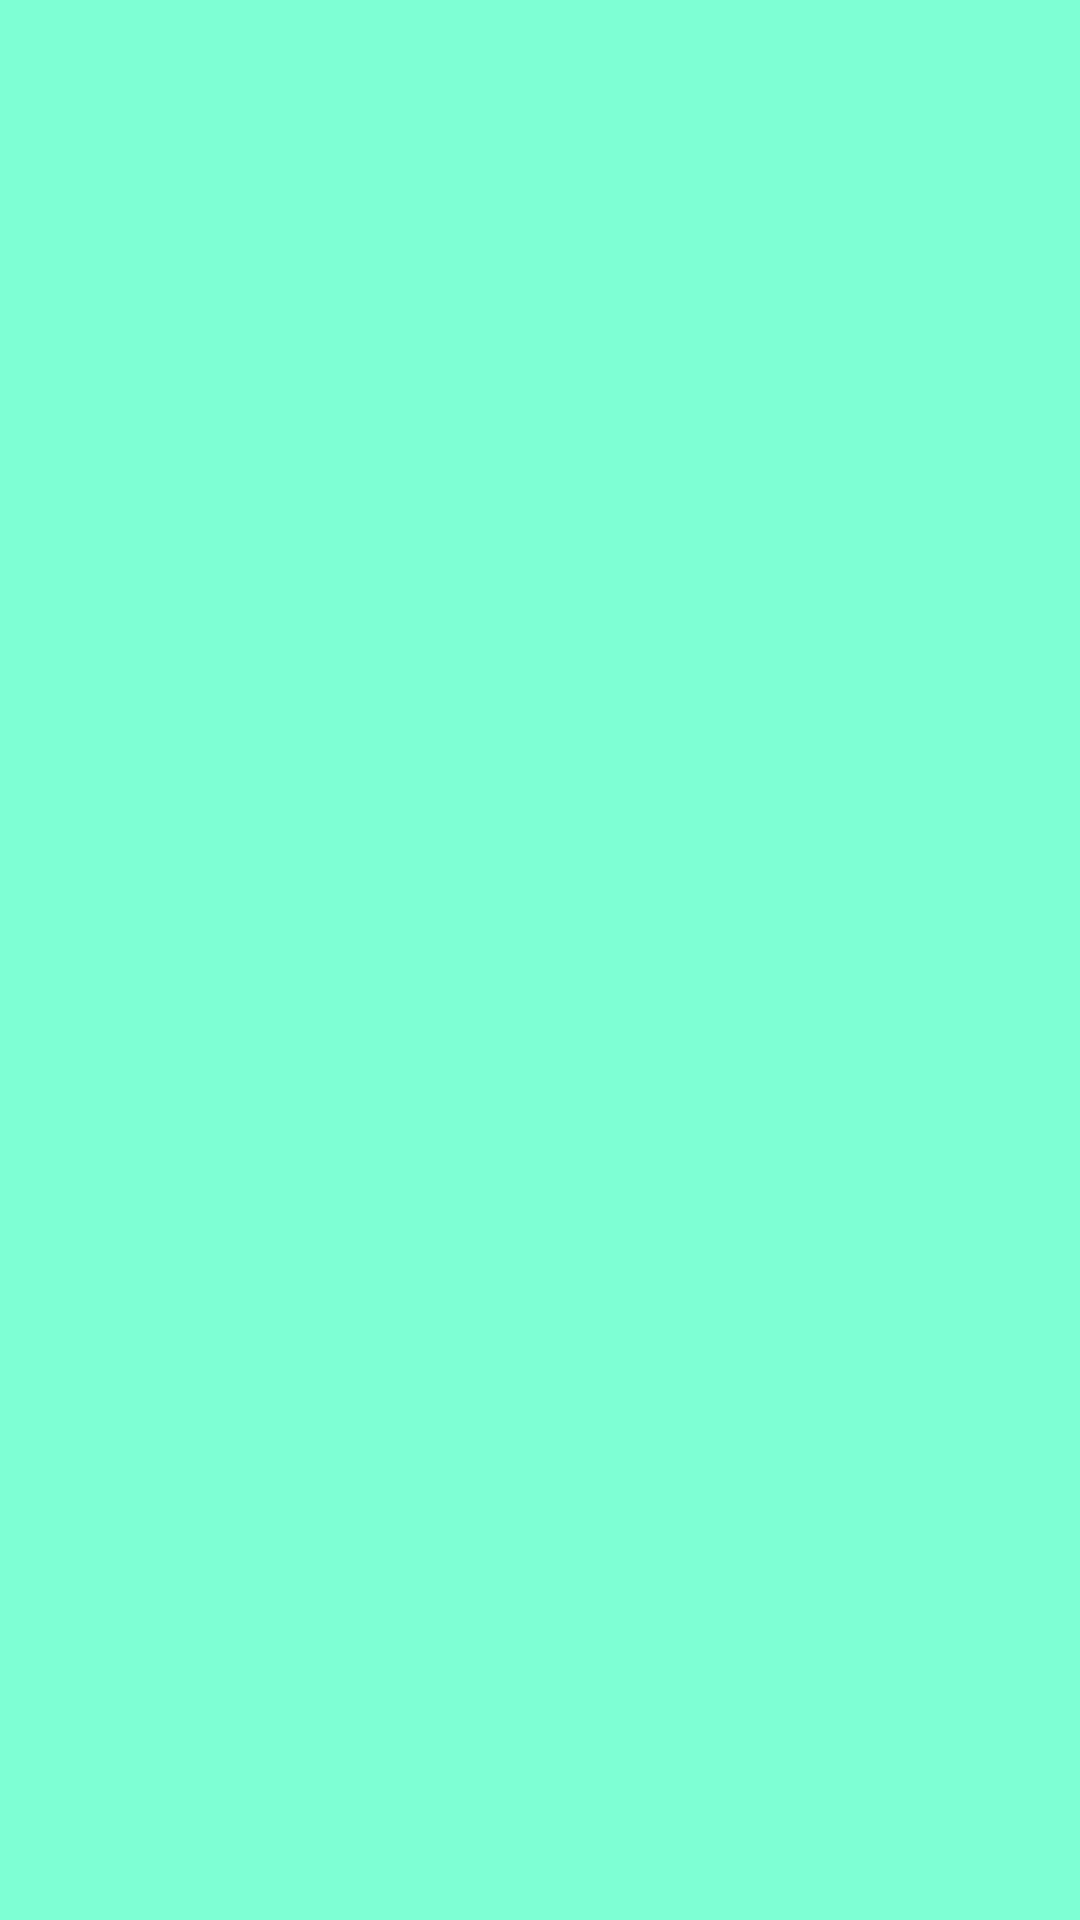 1080x1920 Aquamarine Solid Color Background